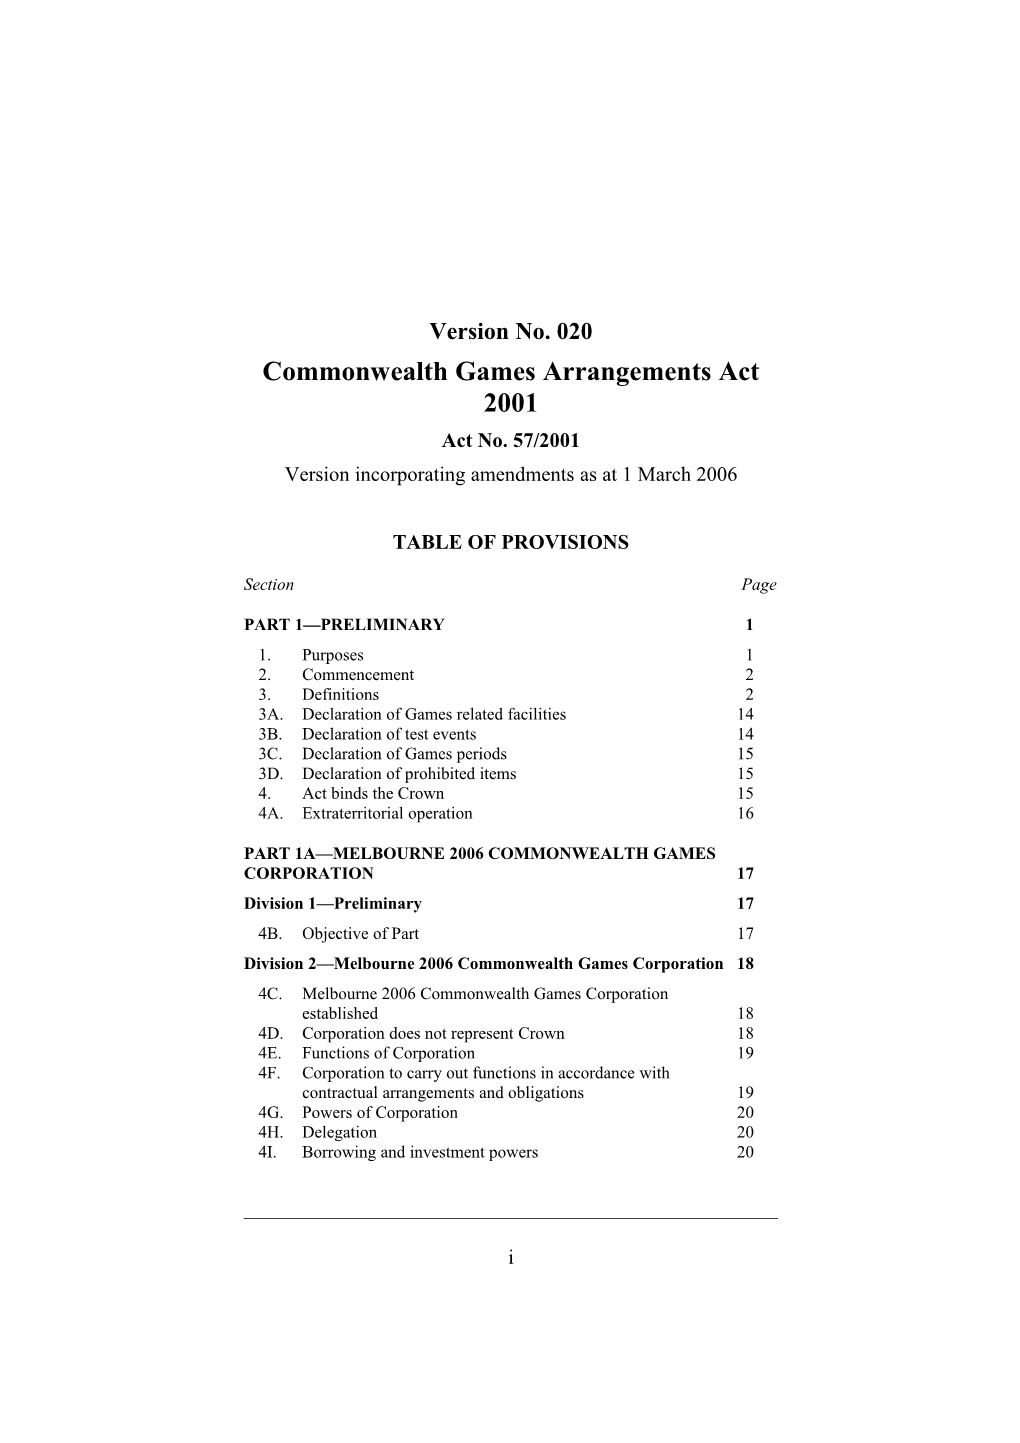 Commonwealth Games Arrangements Act 2001